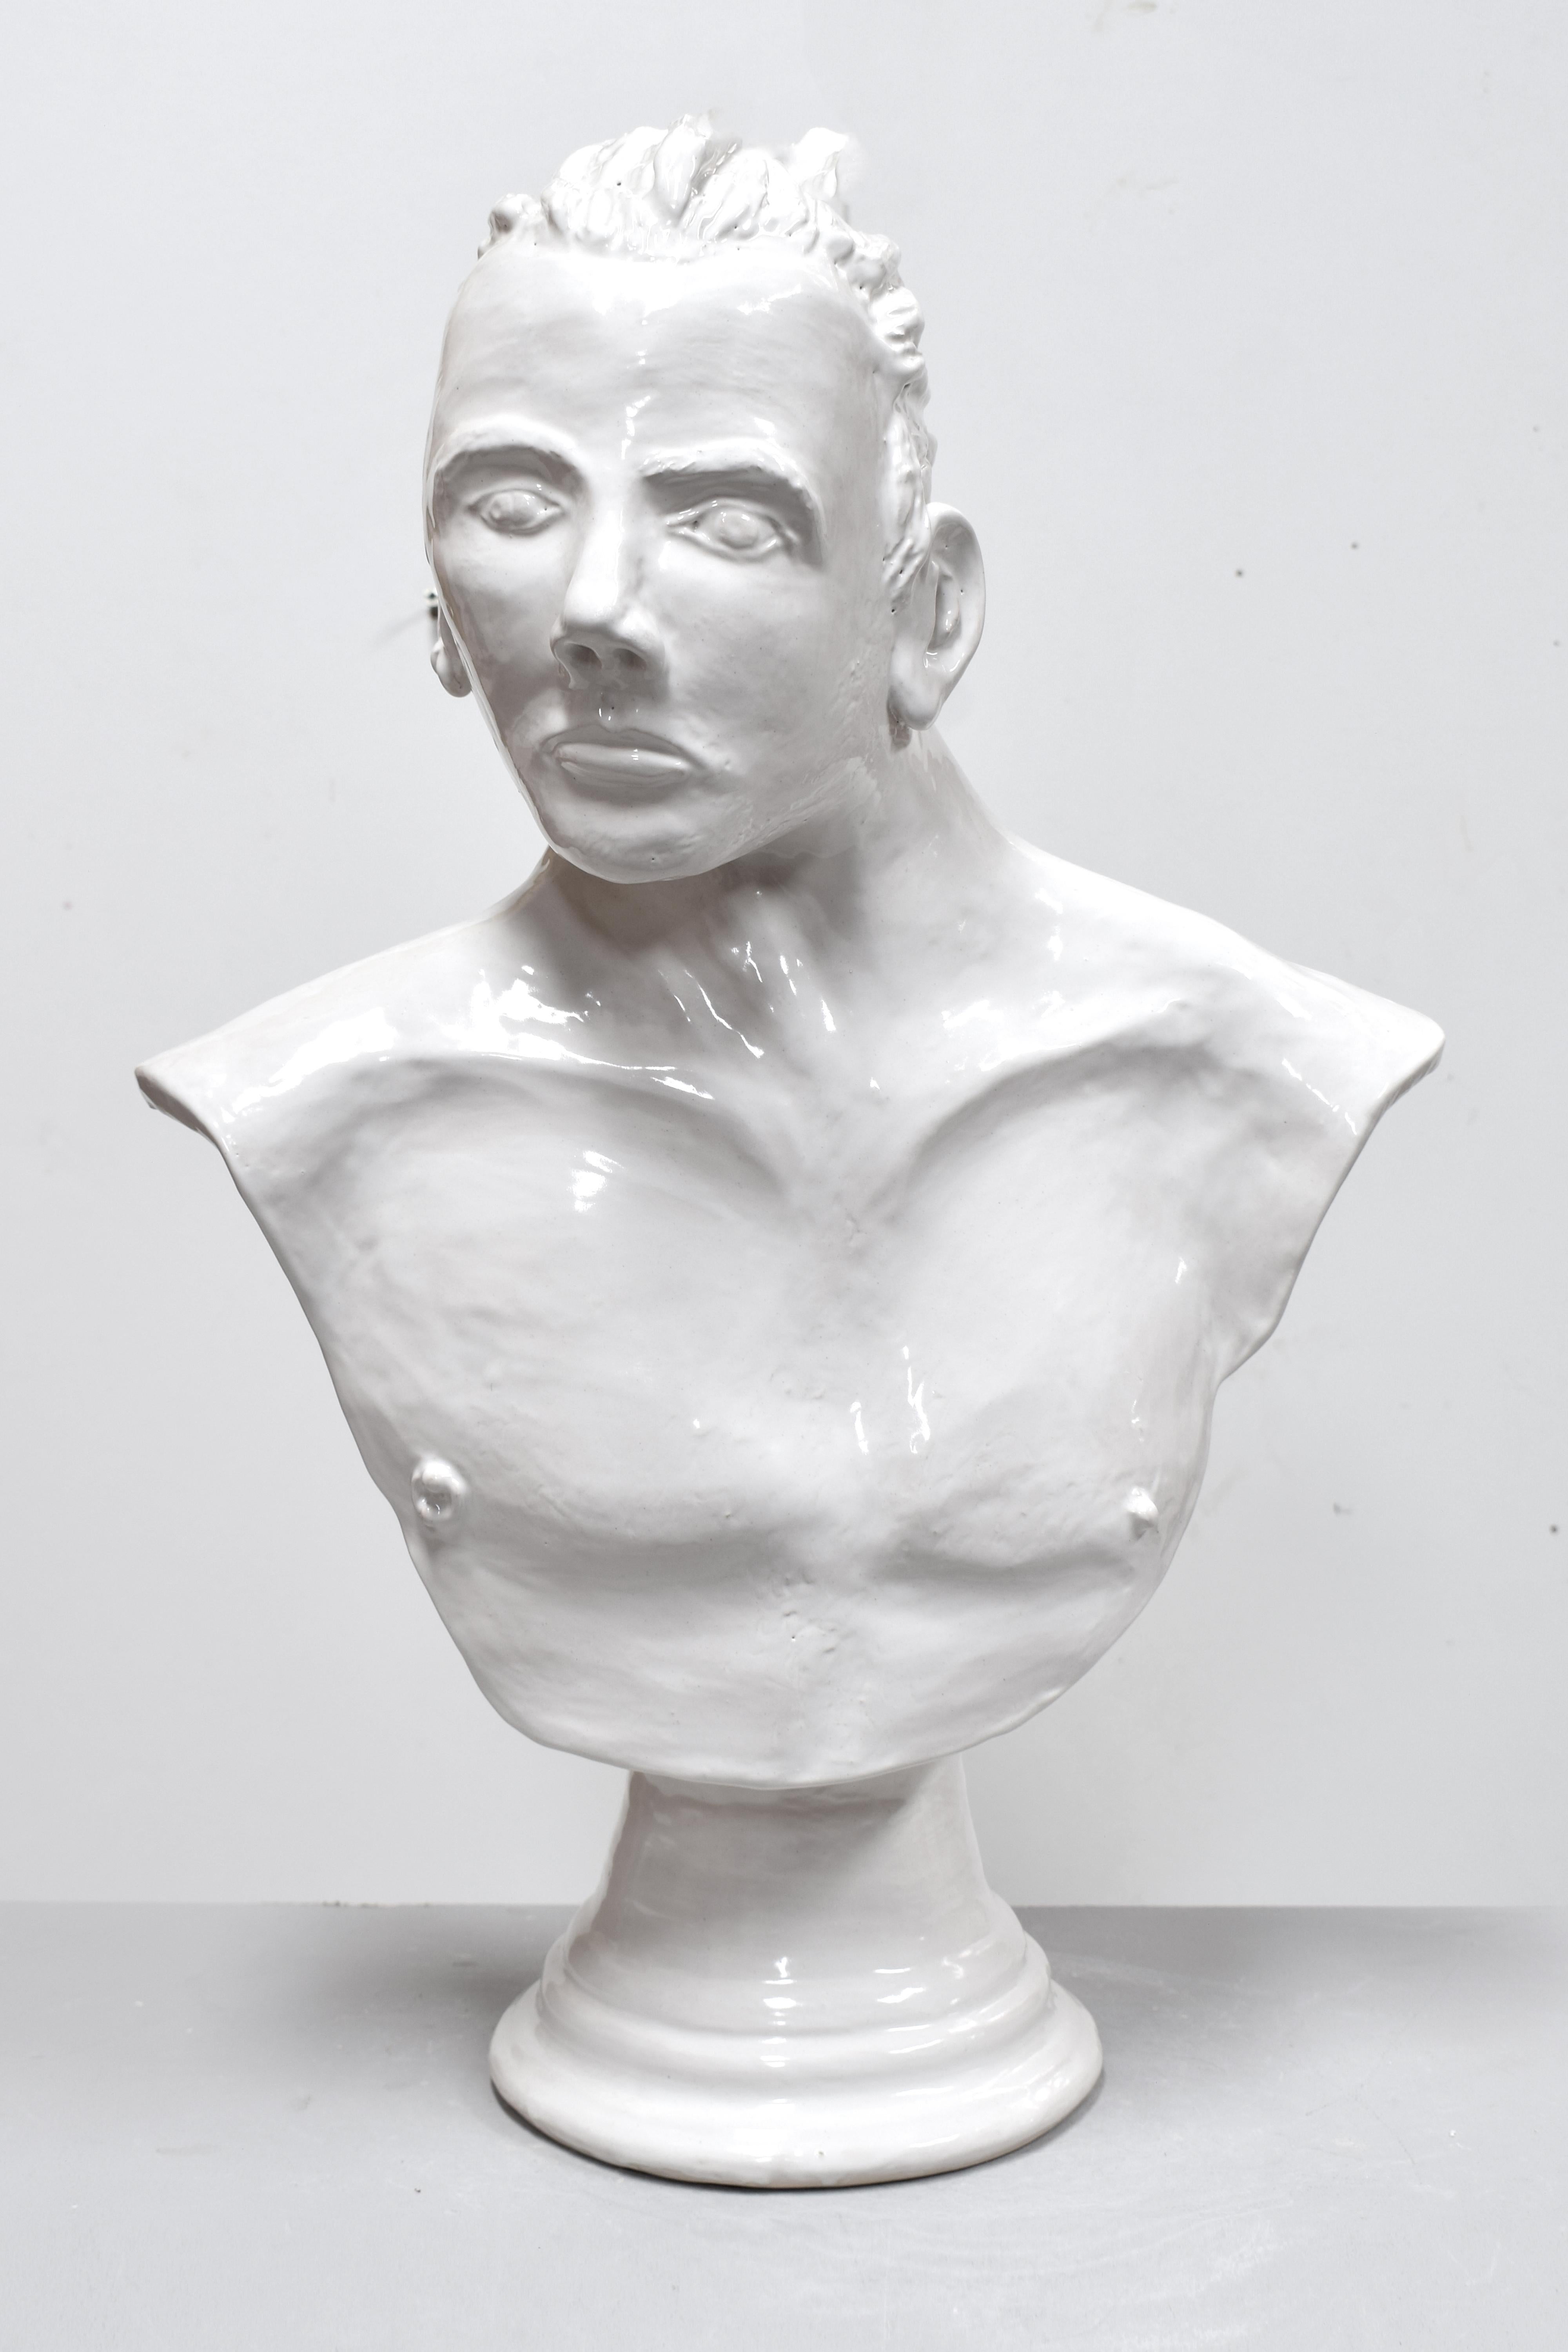 Chris Rijk Figurative Sculpture – Selbstporträt als gerader Mann